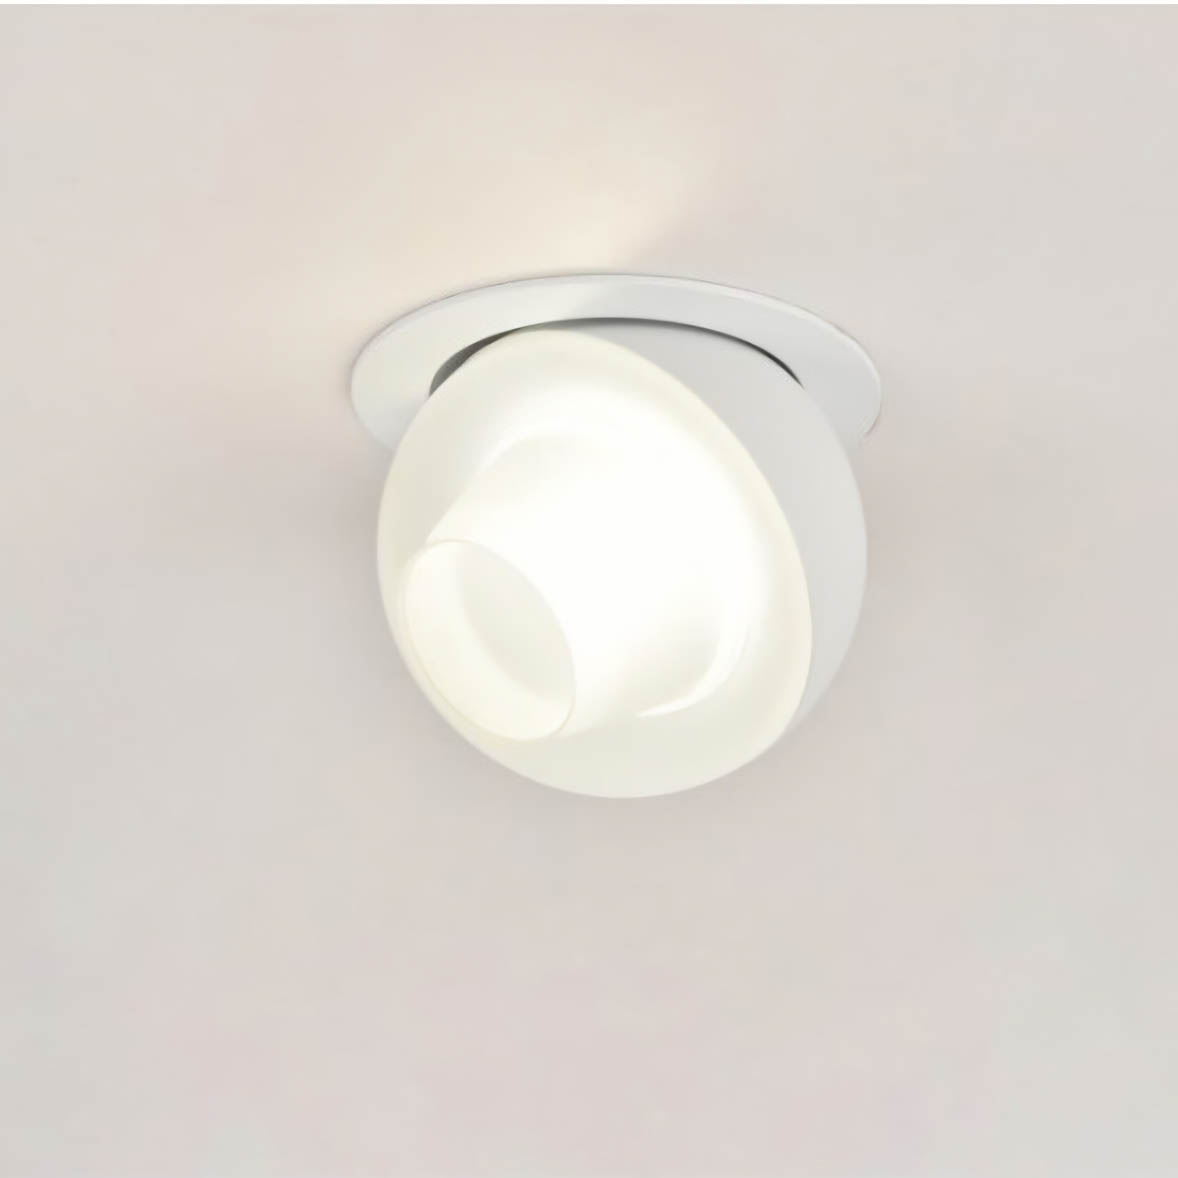 Светодиодный светильник 9 см, 8W, 4000K, Omnilux Mantova OML-103009-08, белый